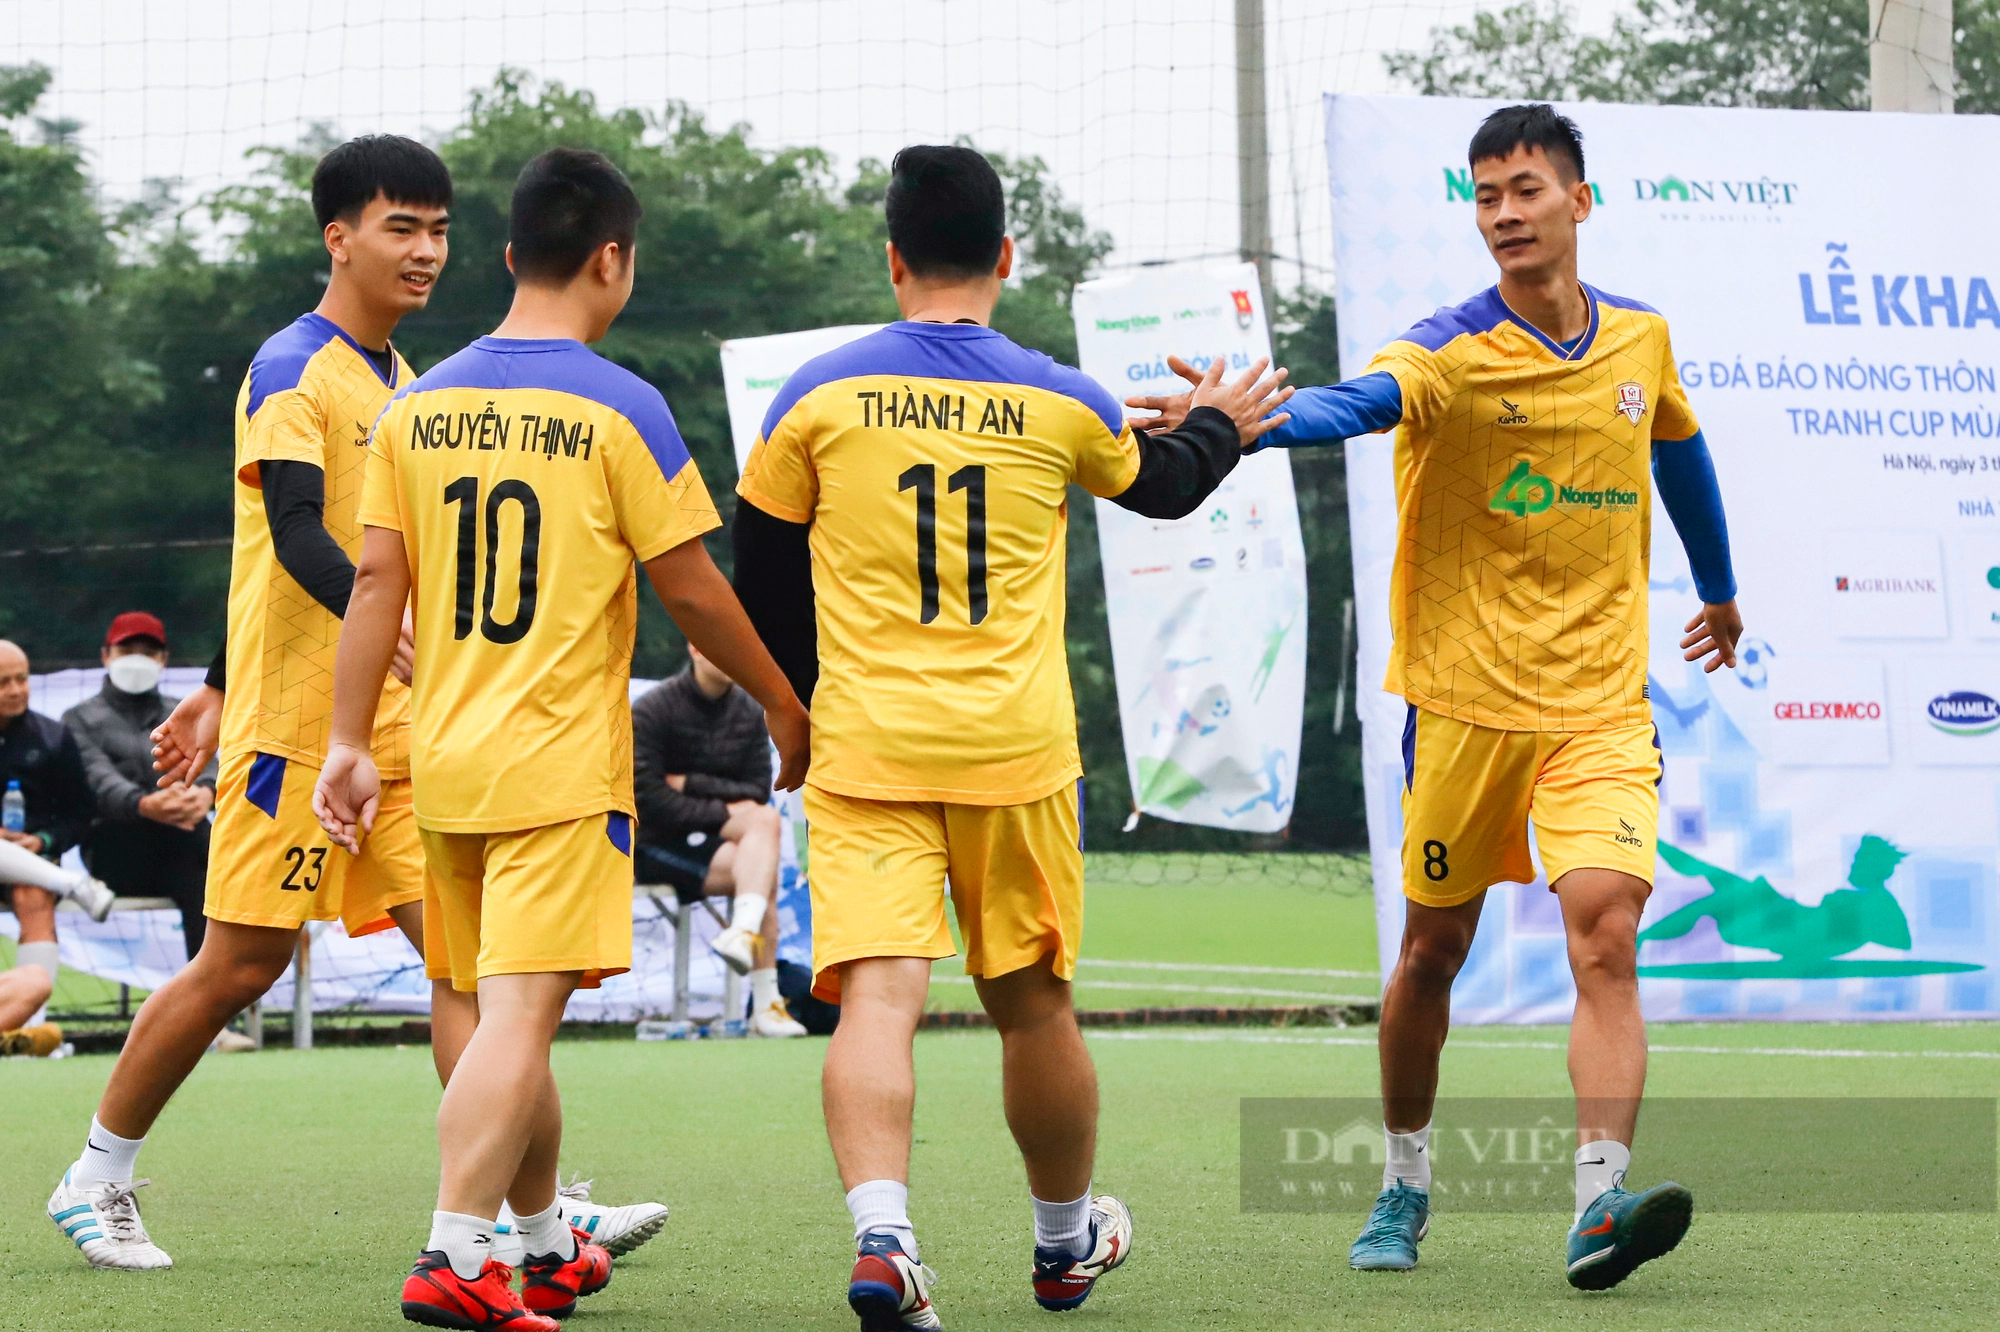 FC Báo NTNN gặp FC Báo chí Nghệ An, VOV đụng độ VTV tại bán kết Giải bóng đá Báo NTNN/Dân Việt 2023 - Ảnh 6.